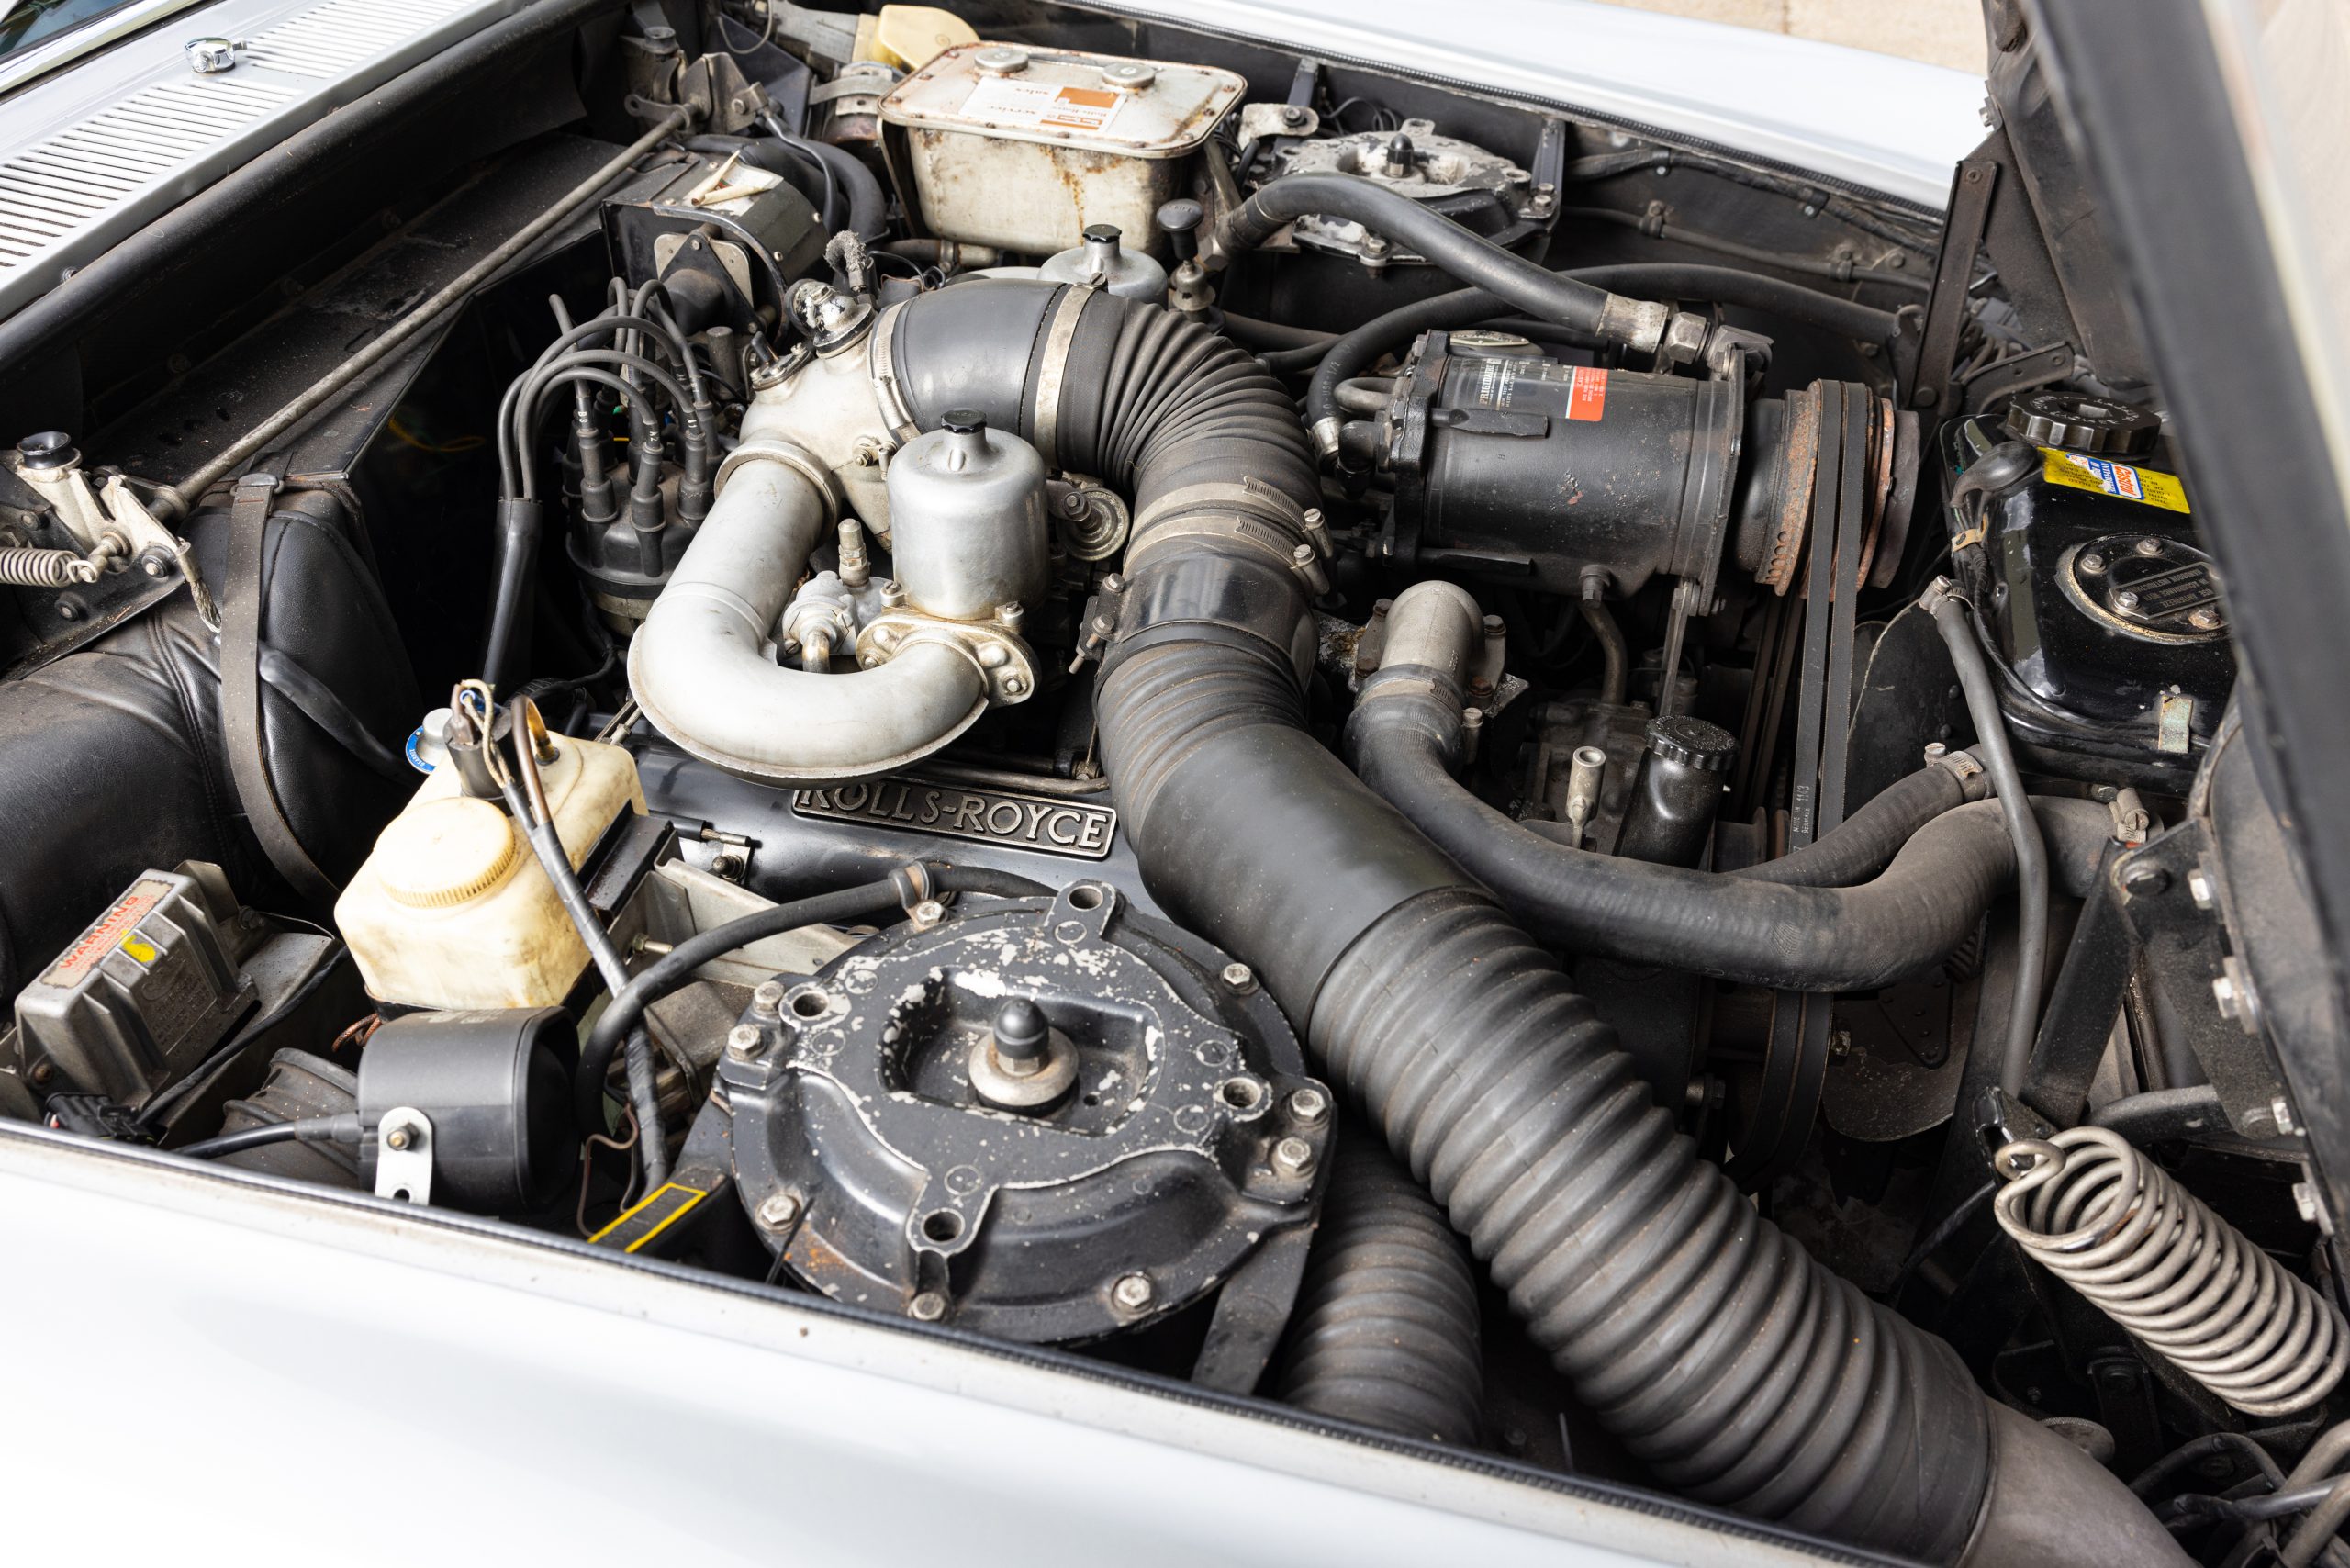 1974 Rolls-Royce Silver Shadow engine